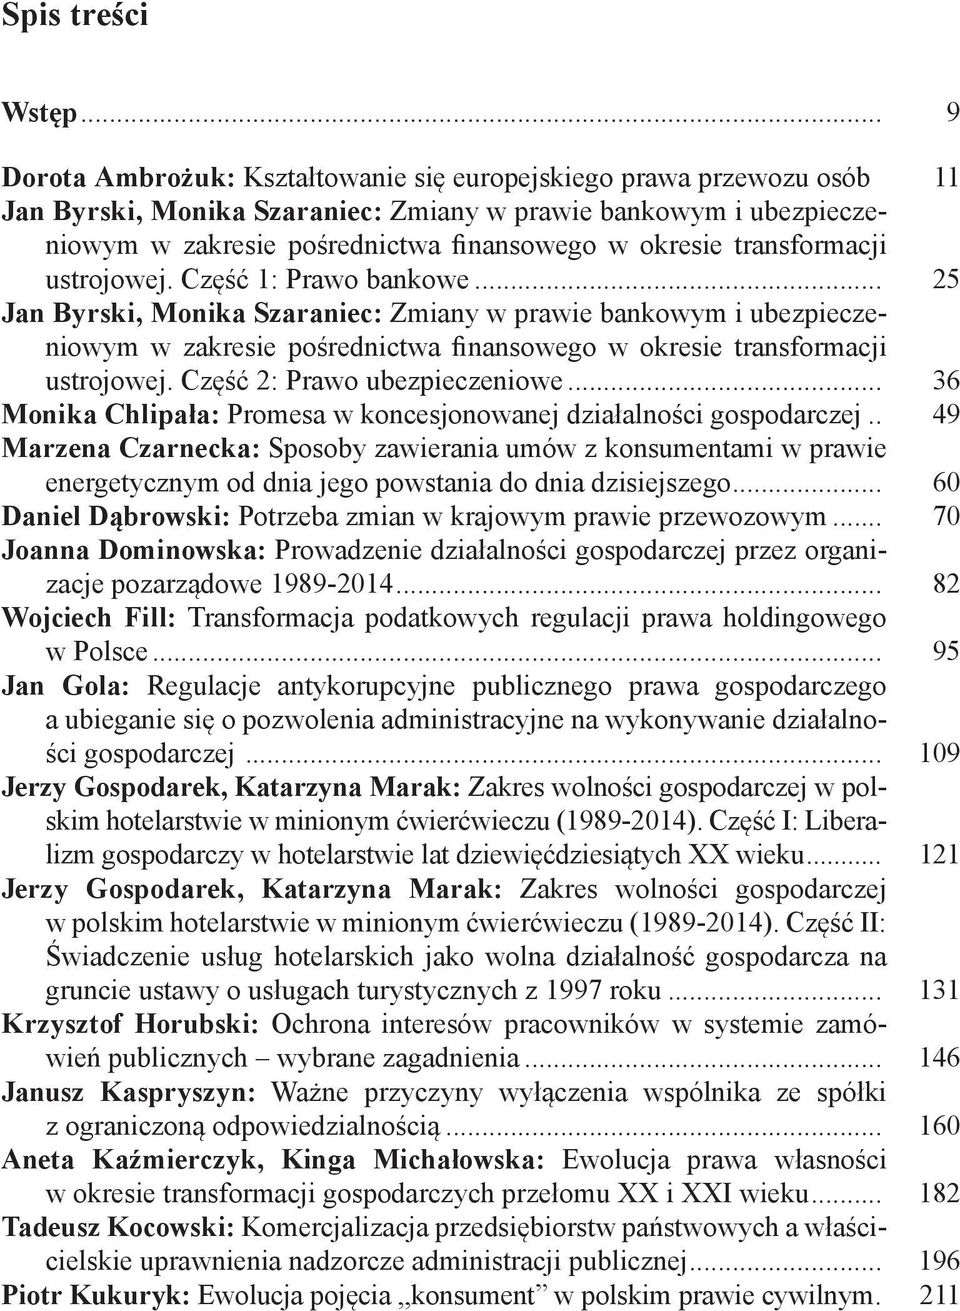 .. 25 Jan Byrski, Monika Szaraniec: Zmiany w prawie bankowym i ubezpieczeniowym w zakresie pośrednictwa finansowego w okresie transformacji ustrojowej. Część 2: Prawo ubezpieczeniowe.